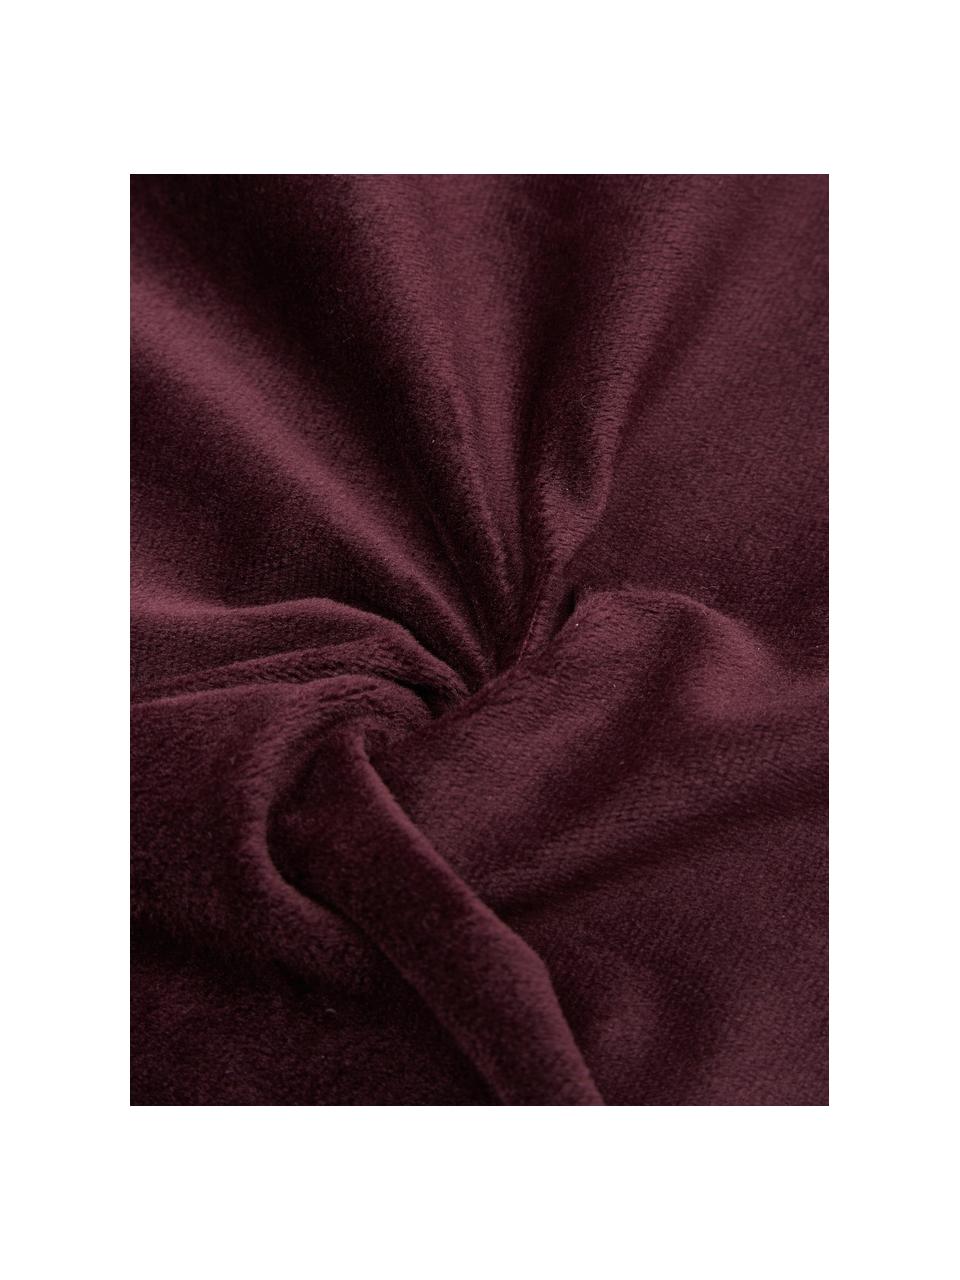 Flauschiges Kissen Oscar, mit Inlett, Bezug: 95% Baumwolle, 5% Acryl, Burgund, 50 x 50 cm